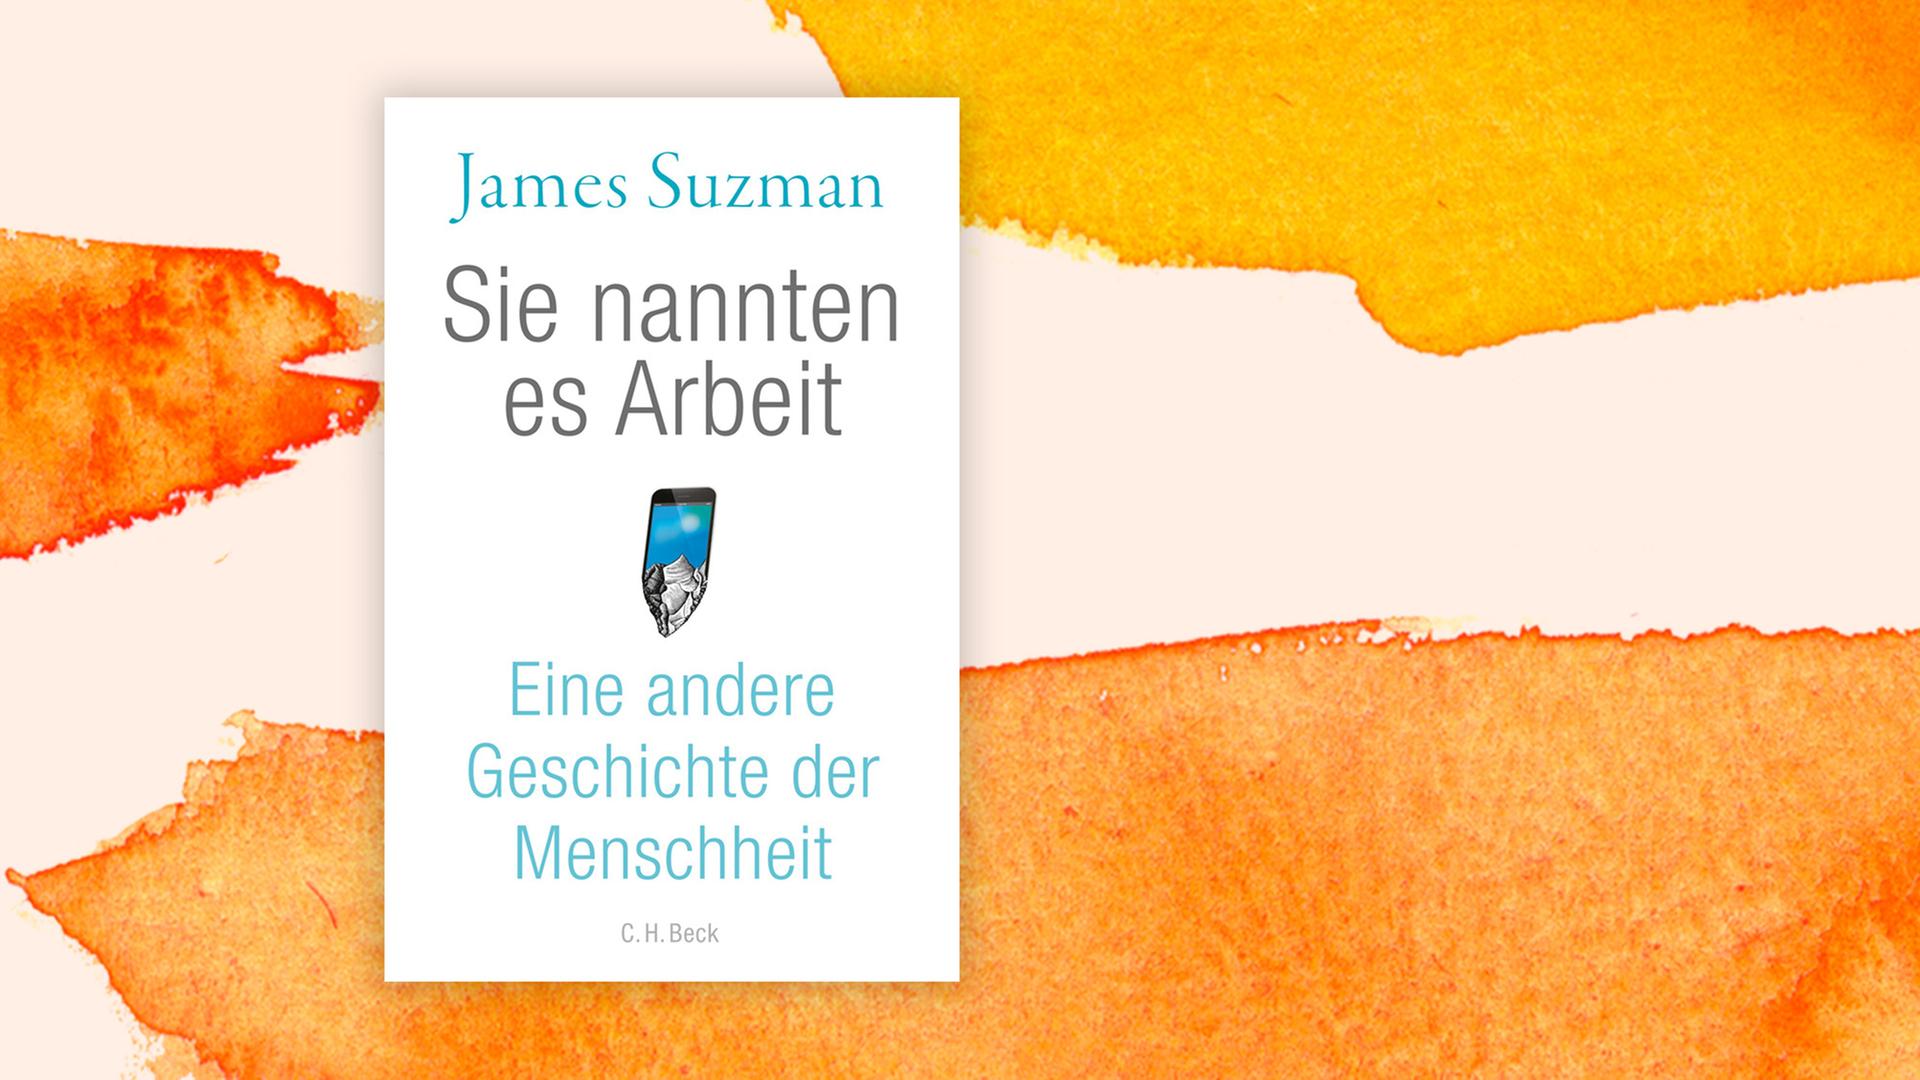 Das Buchcover "Sie nannten es Arbeit" von James Suzman ist vor einem grafischen Hintergrund zu sehen.